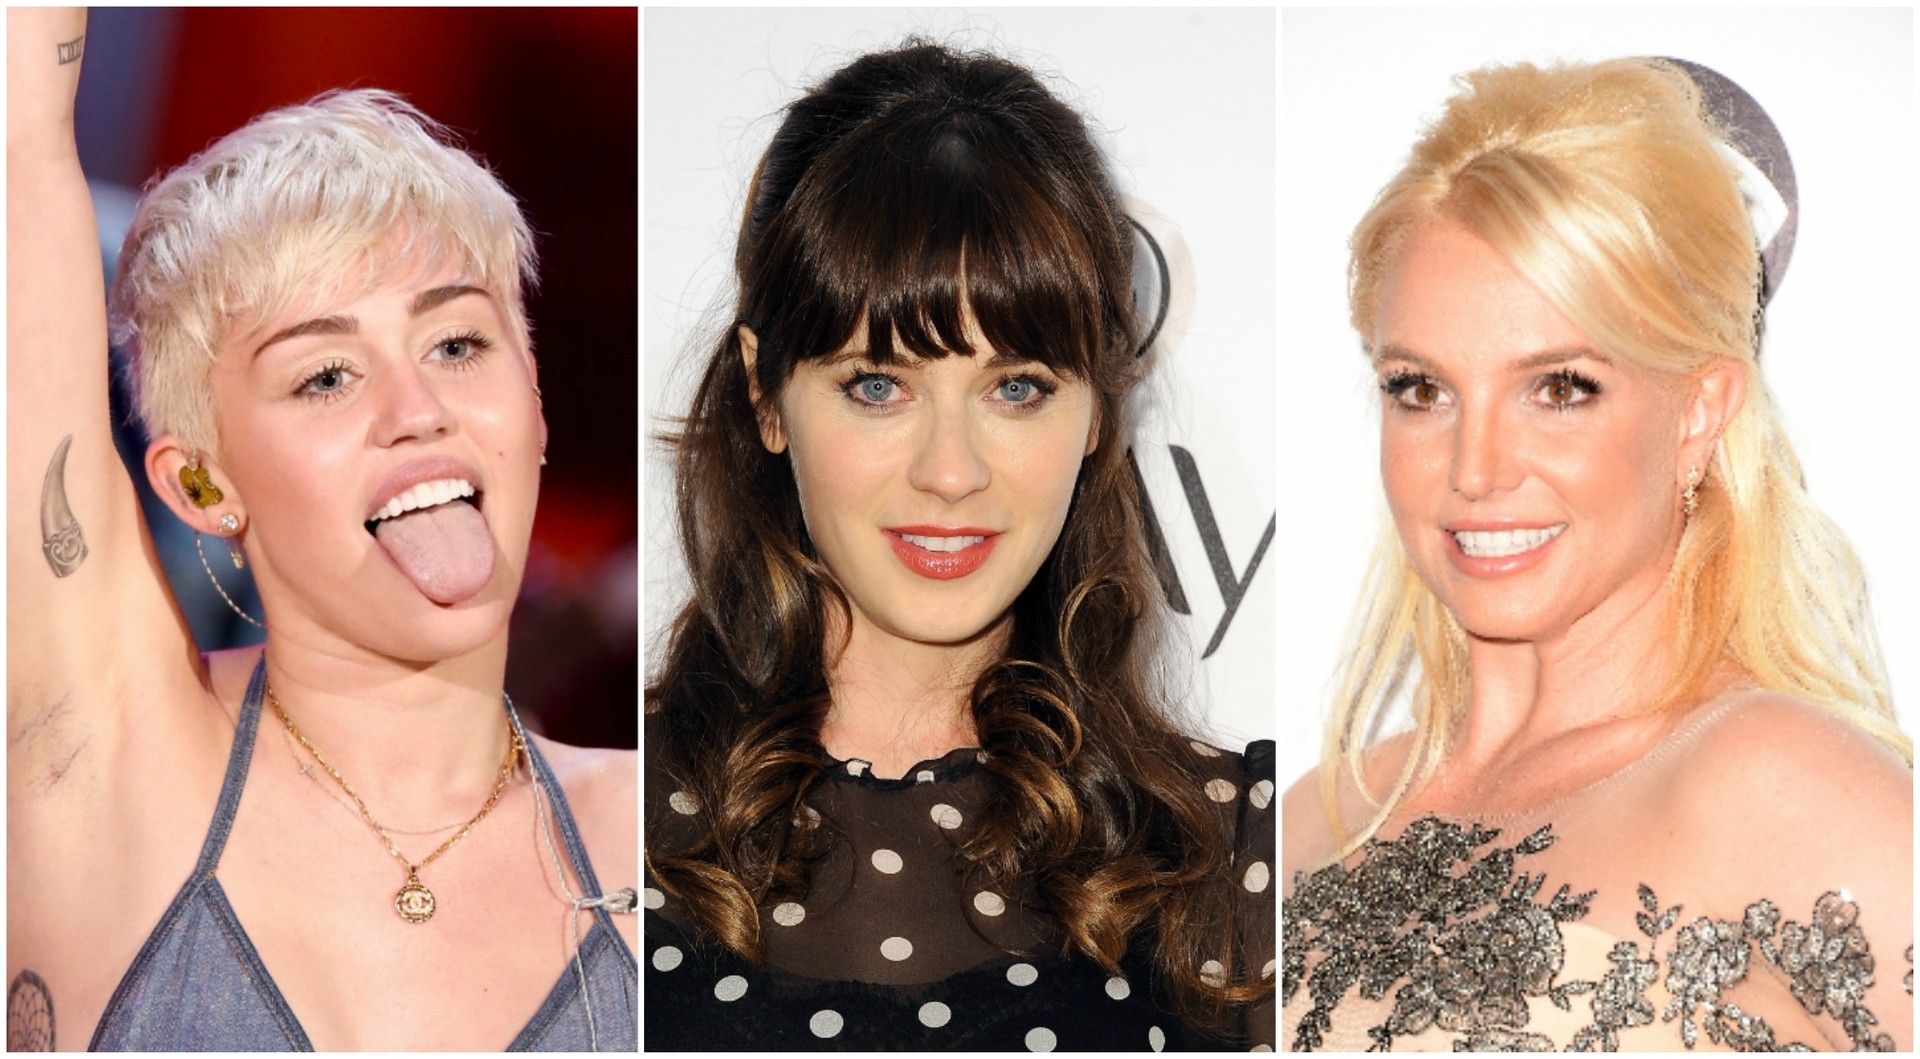 Quais serão as verdadeiras tonalidades dos cabelos dessas famosas? (Foto: Getty Images)